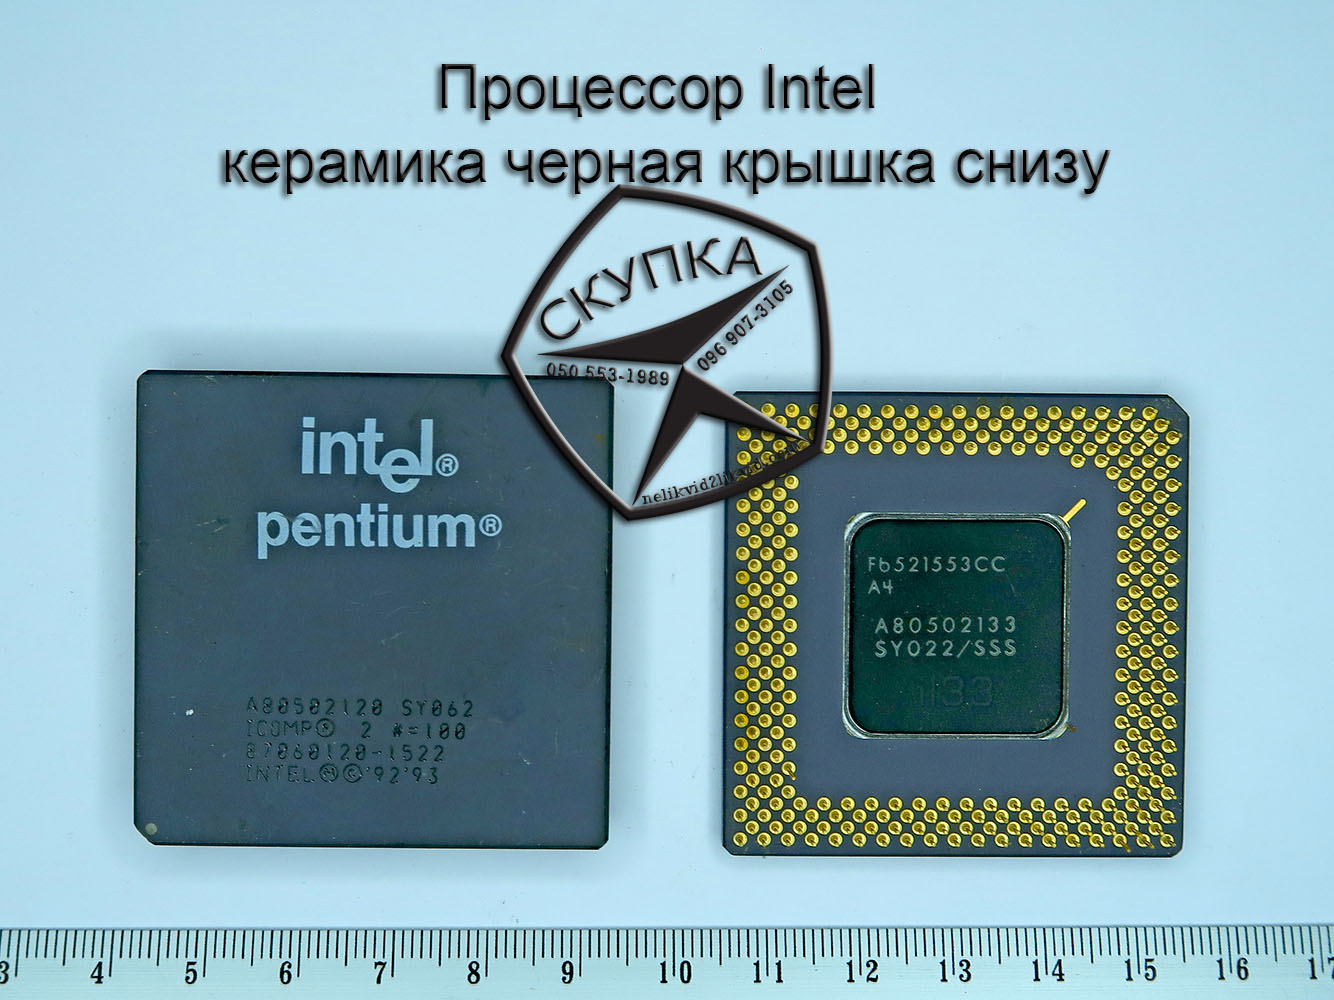 Крышка процессора Интел. Процессор Интел м с 06. Intel Ceramics. Intel 14 купить